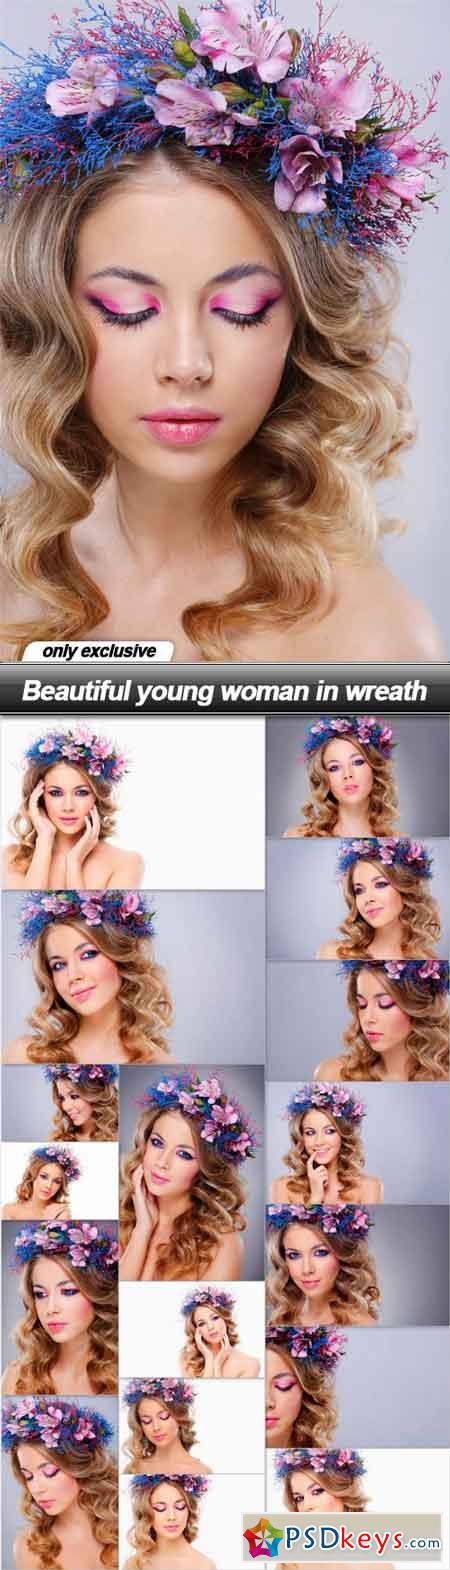 Beautiful young woman in wreath - 18 UHQ JPEG